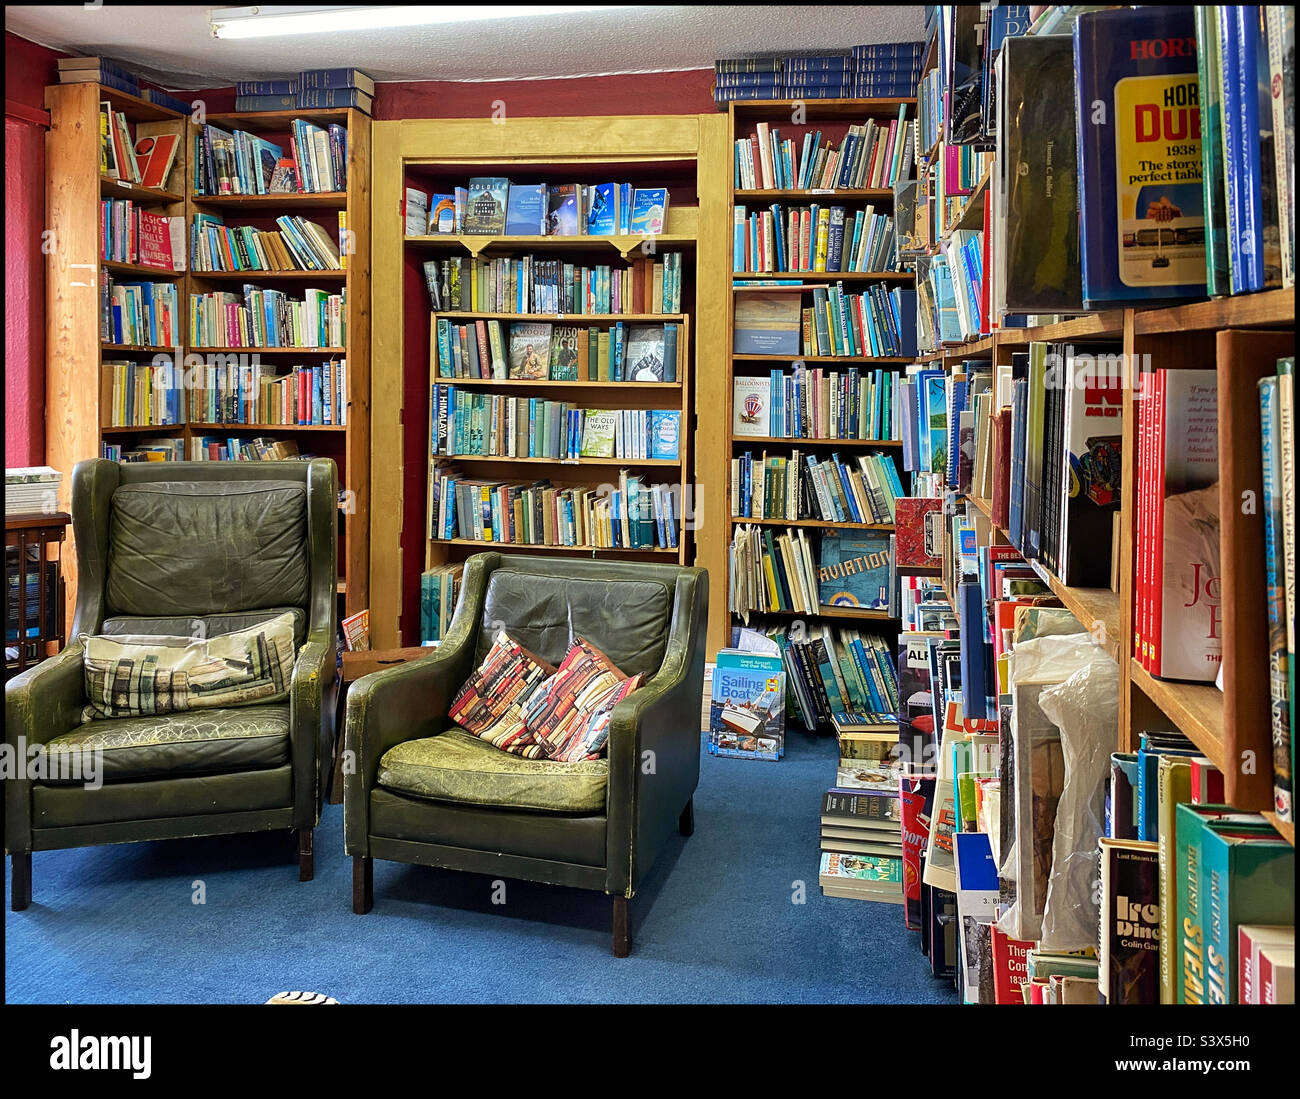 L’intérieur de l’un des nombreux magasins de livres de la ville frontalière de Hay-on-Wye au Royaume-Uni la ville est mondialement connue pour ses nombreux magasins de livres ainsi que pour son festival littéraire annuel. Photo ©️ C.H. Banque D'Images